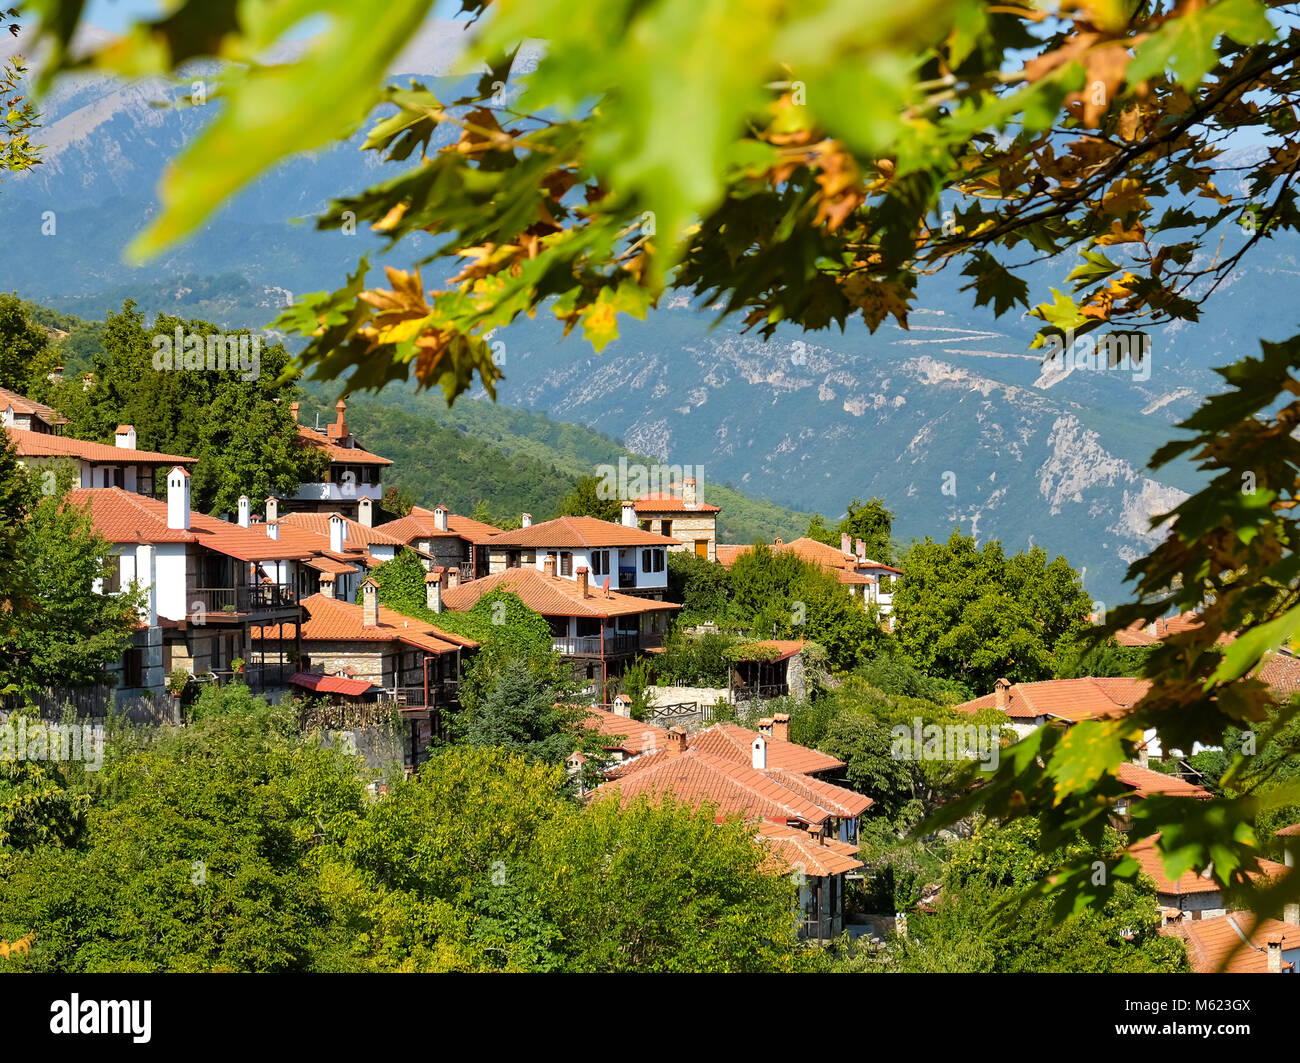 Palaios Panteleimonas Village in Leptokaria region Greece Stock Photo